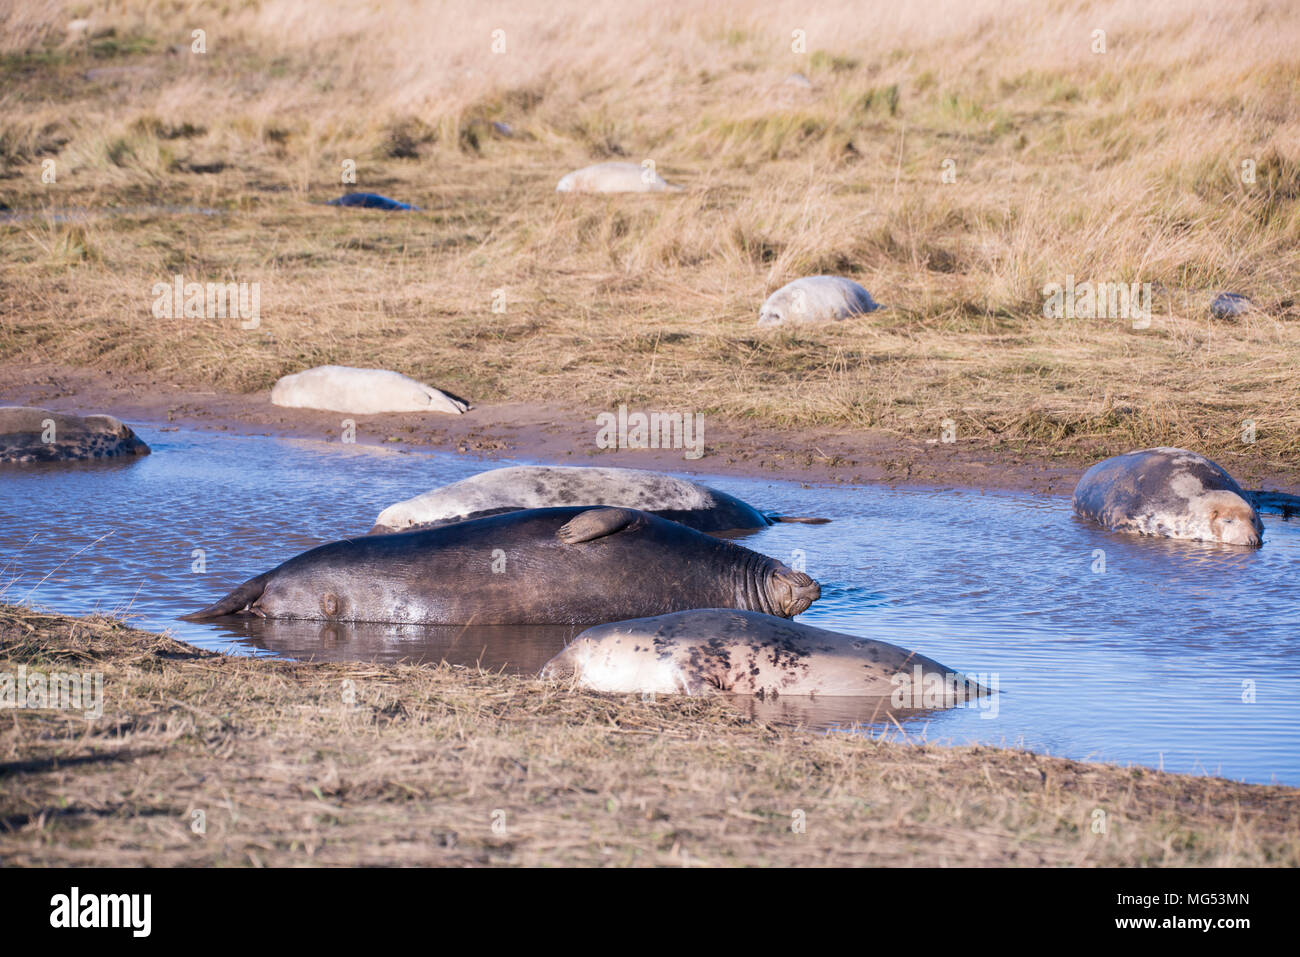 Donna Nook, Lincolnshire, Royaume-Uni - Nov 16 : Les phoques gris viennent à terre pour la saison de mise bas se trouvent dans les eaux peu profondes le 16 nov 2016 à Donna Nook Seal Sanctuary, Banque D'Images